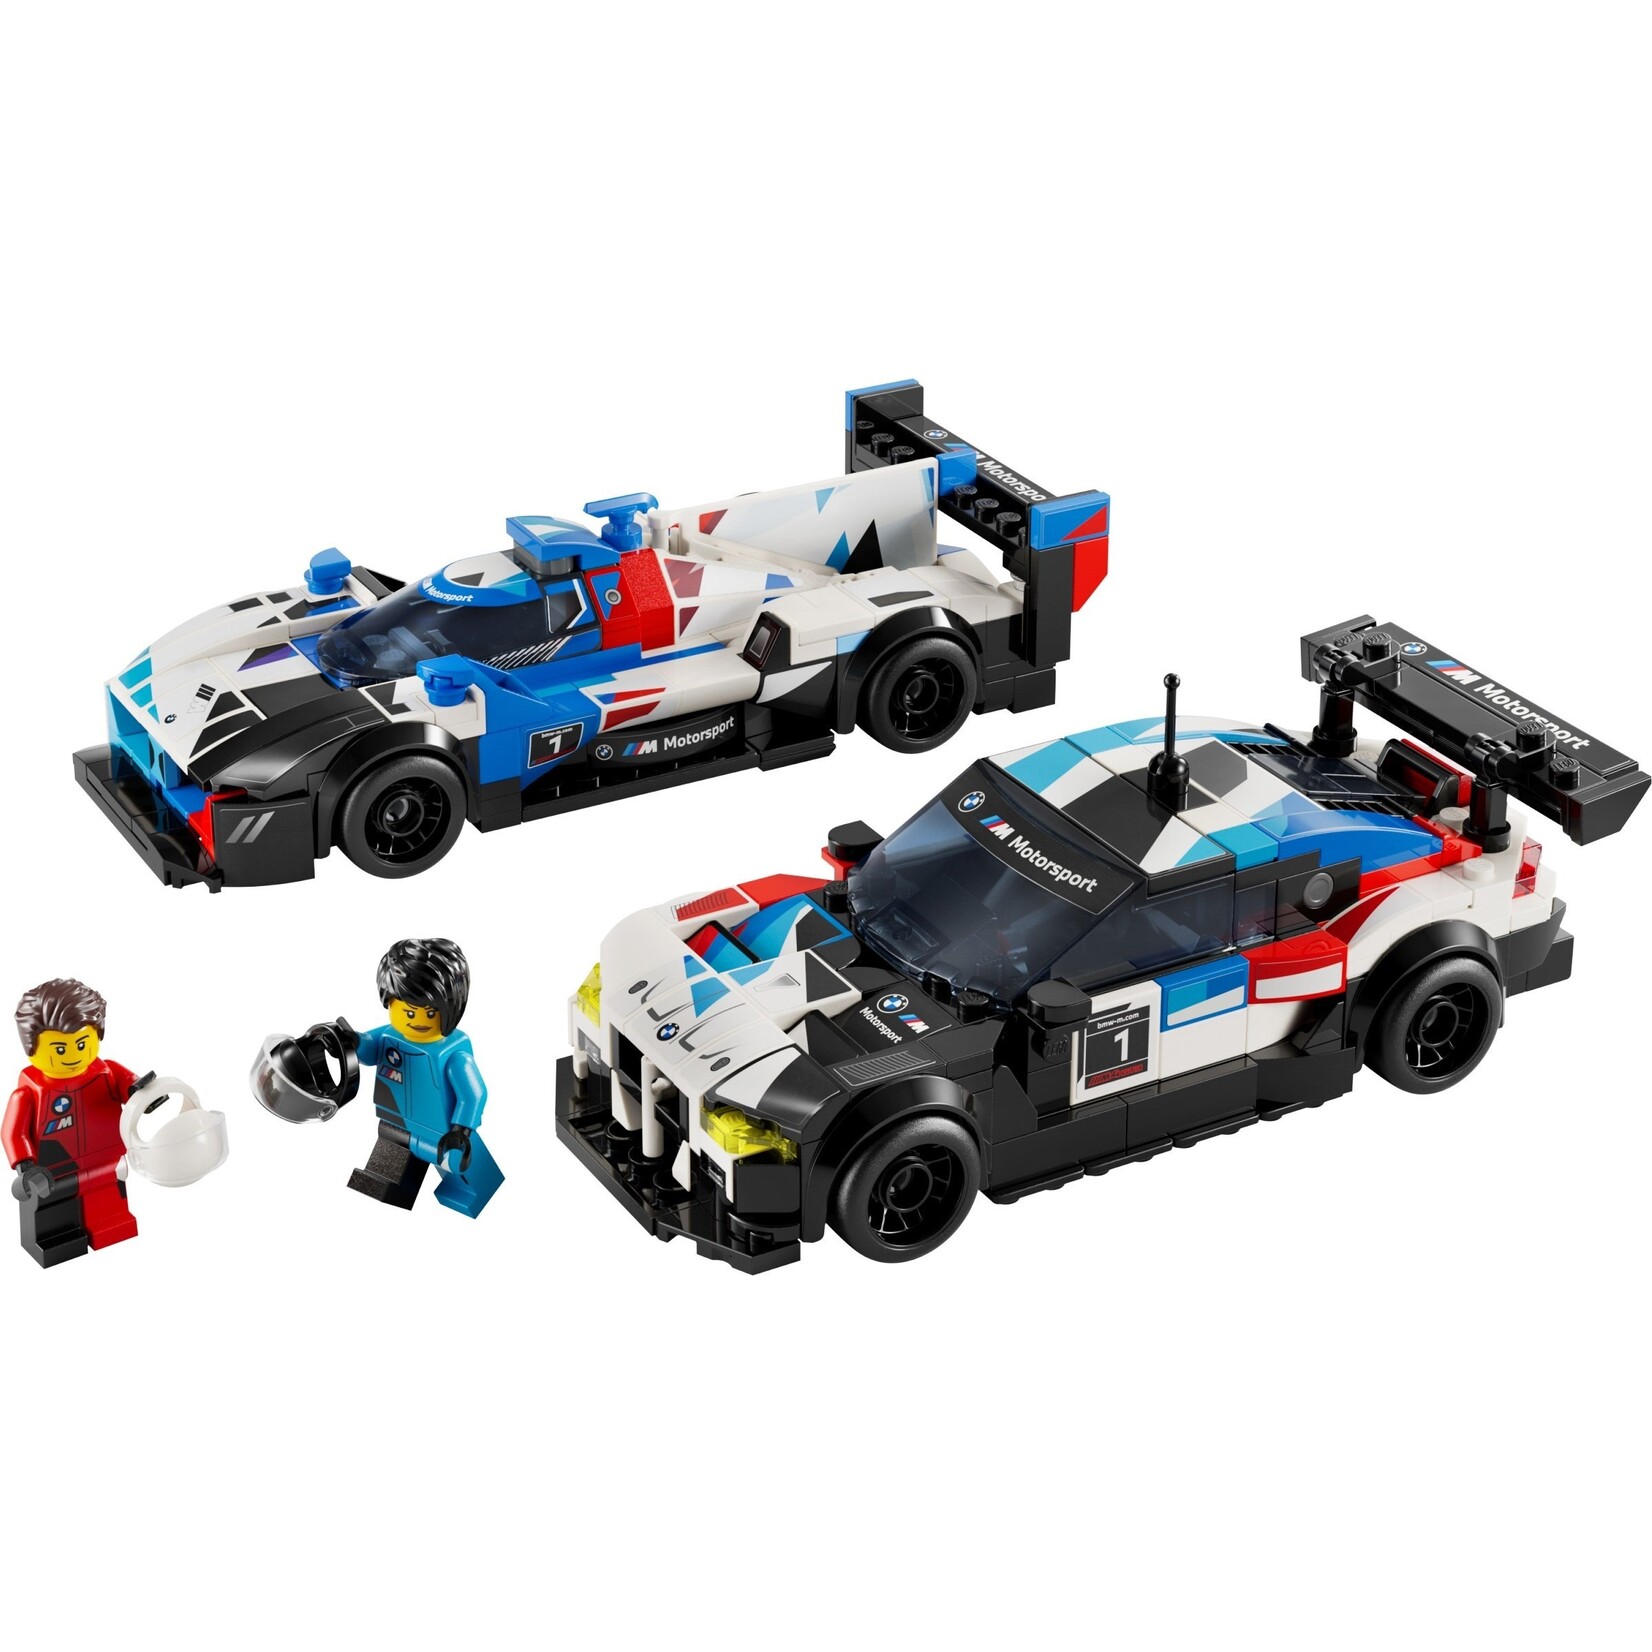 LEGO BMW M4 GT3 & BMW M Hybrid V8 racewagens - 76922